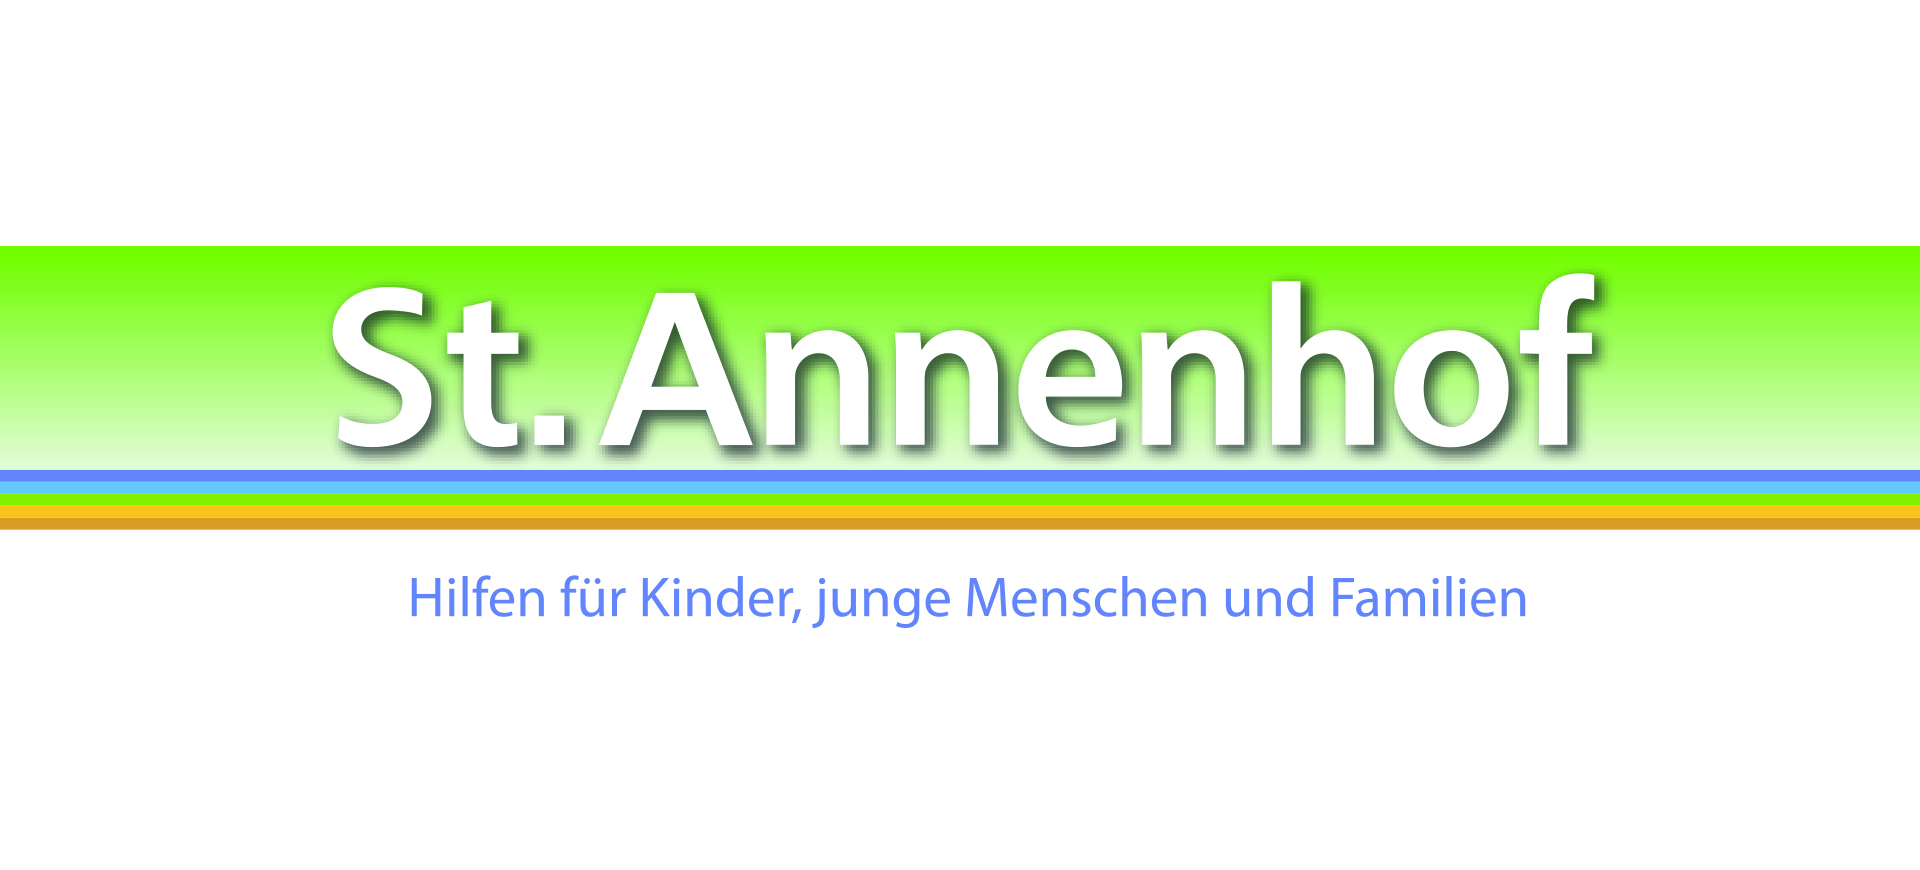 St. Annenhof Logo (c) St. Annenhof